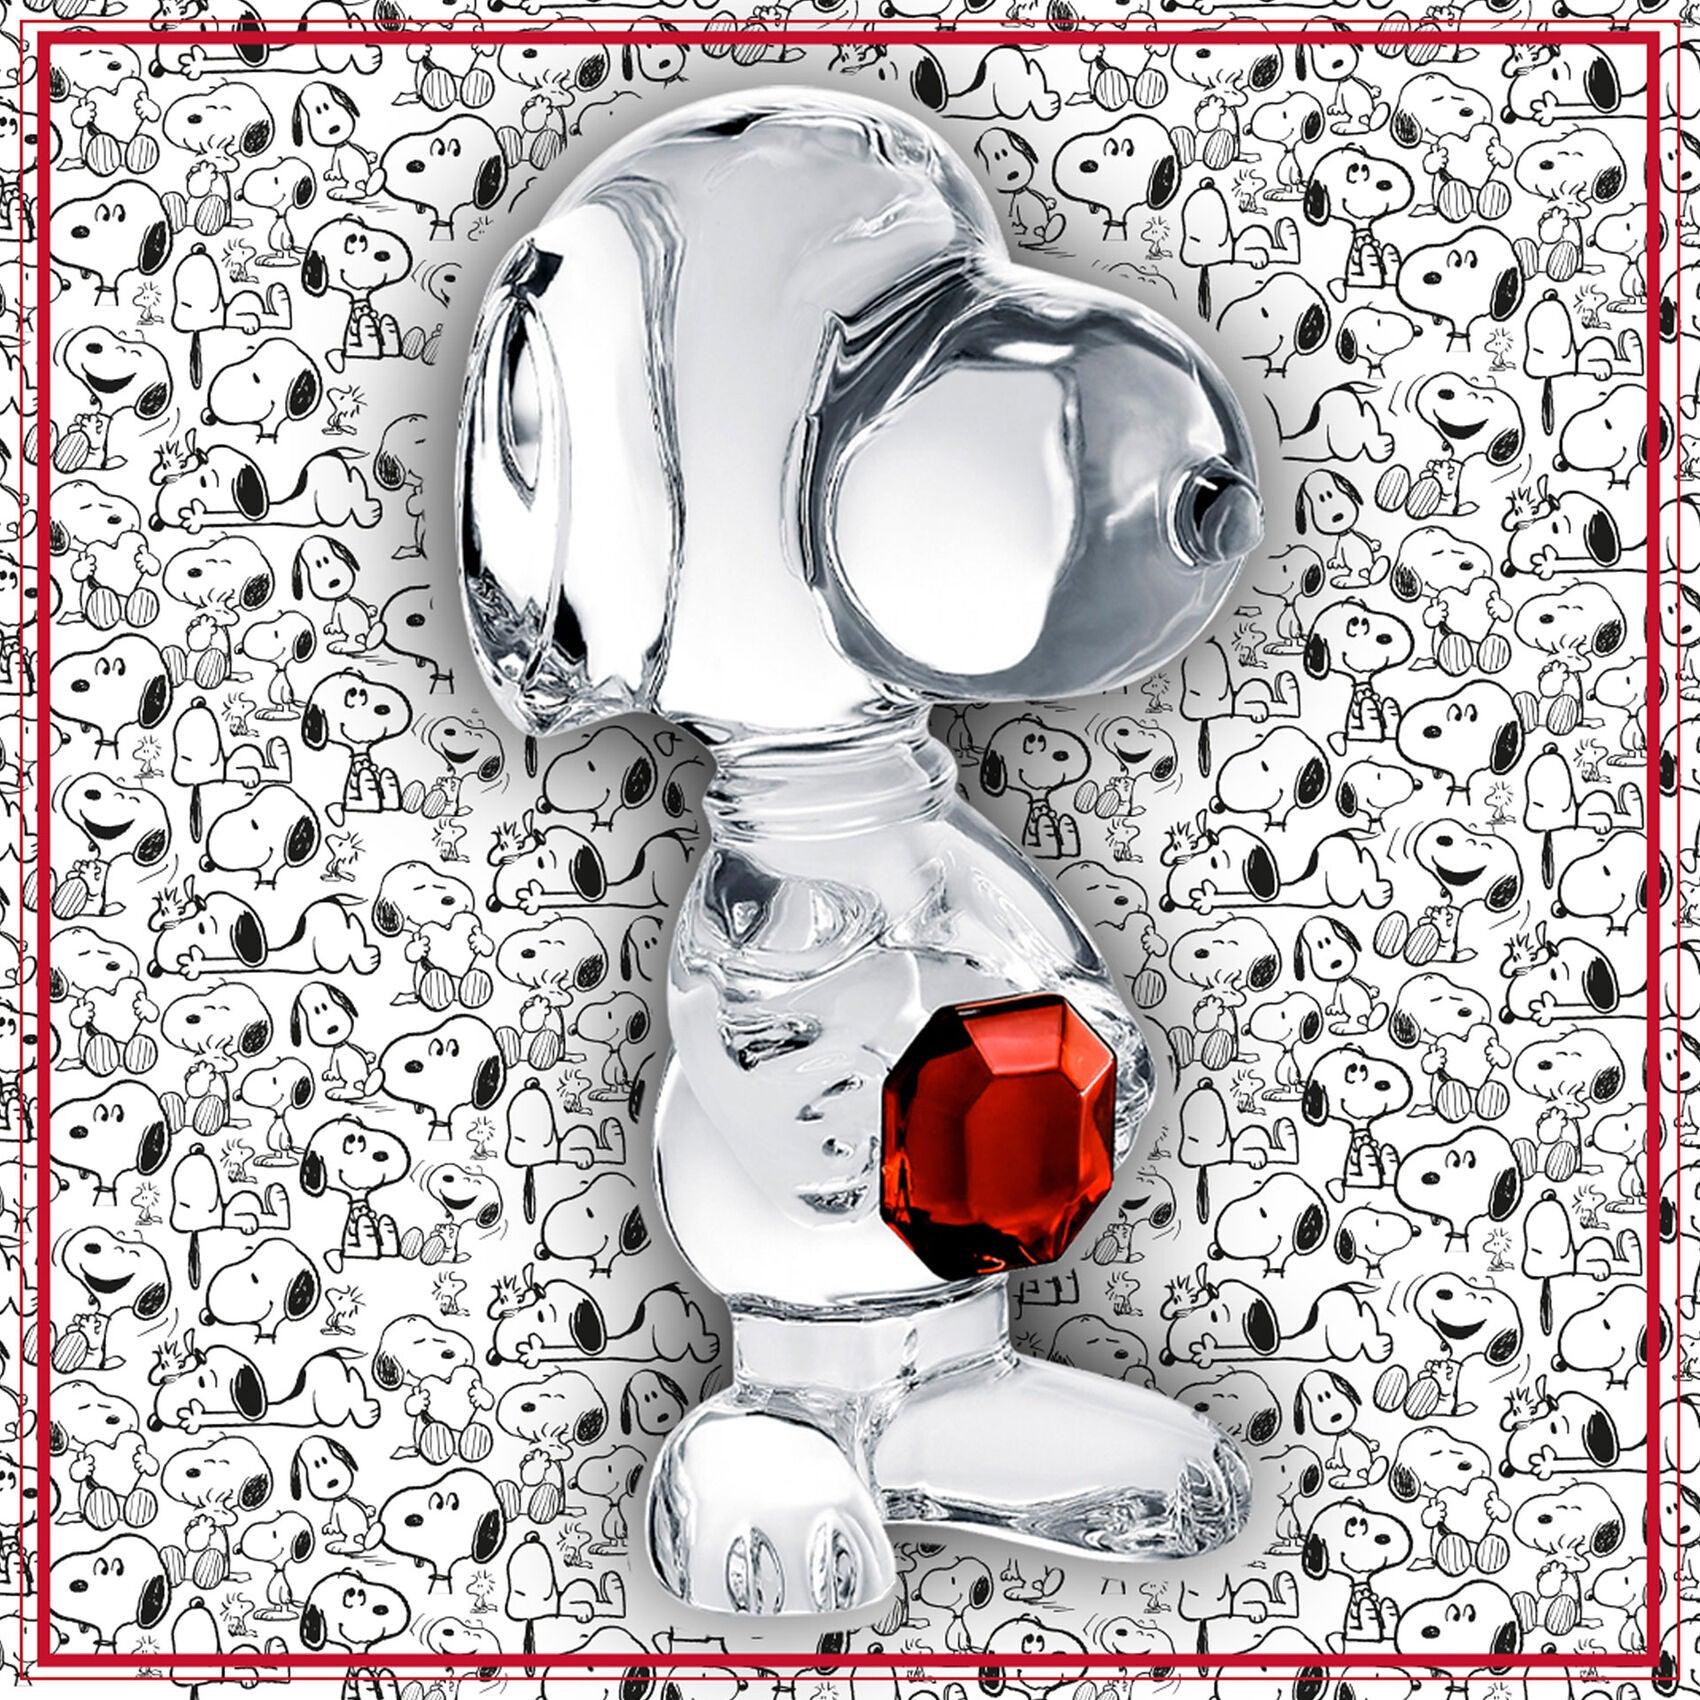 Pop Art Fusion - PopArtFusion - Baccarat Baccarat x Snoopy (Peanuts) - Baccarat Octagon 2814009 popartfusion.com by Conectid